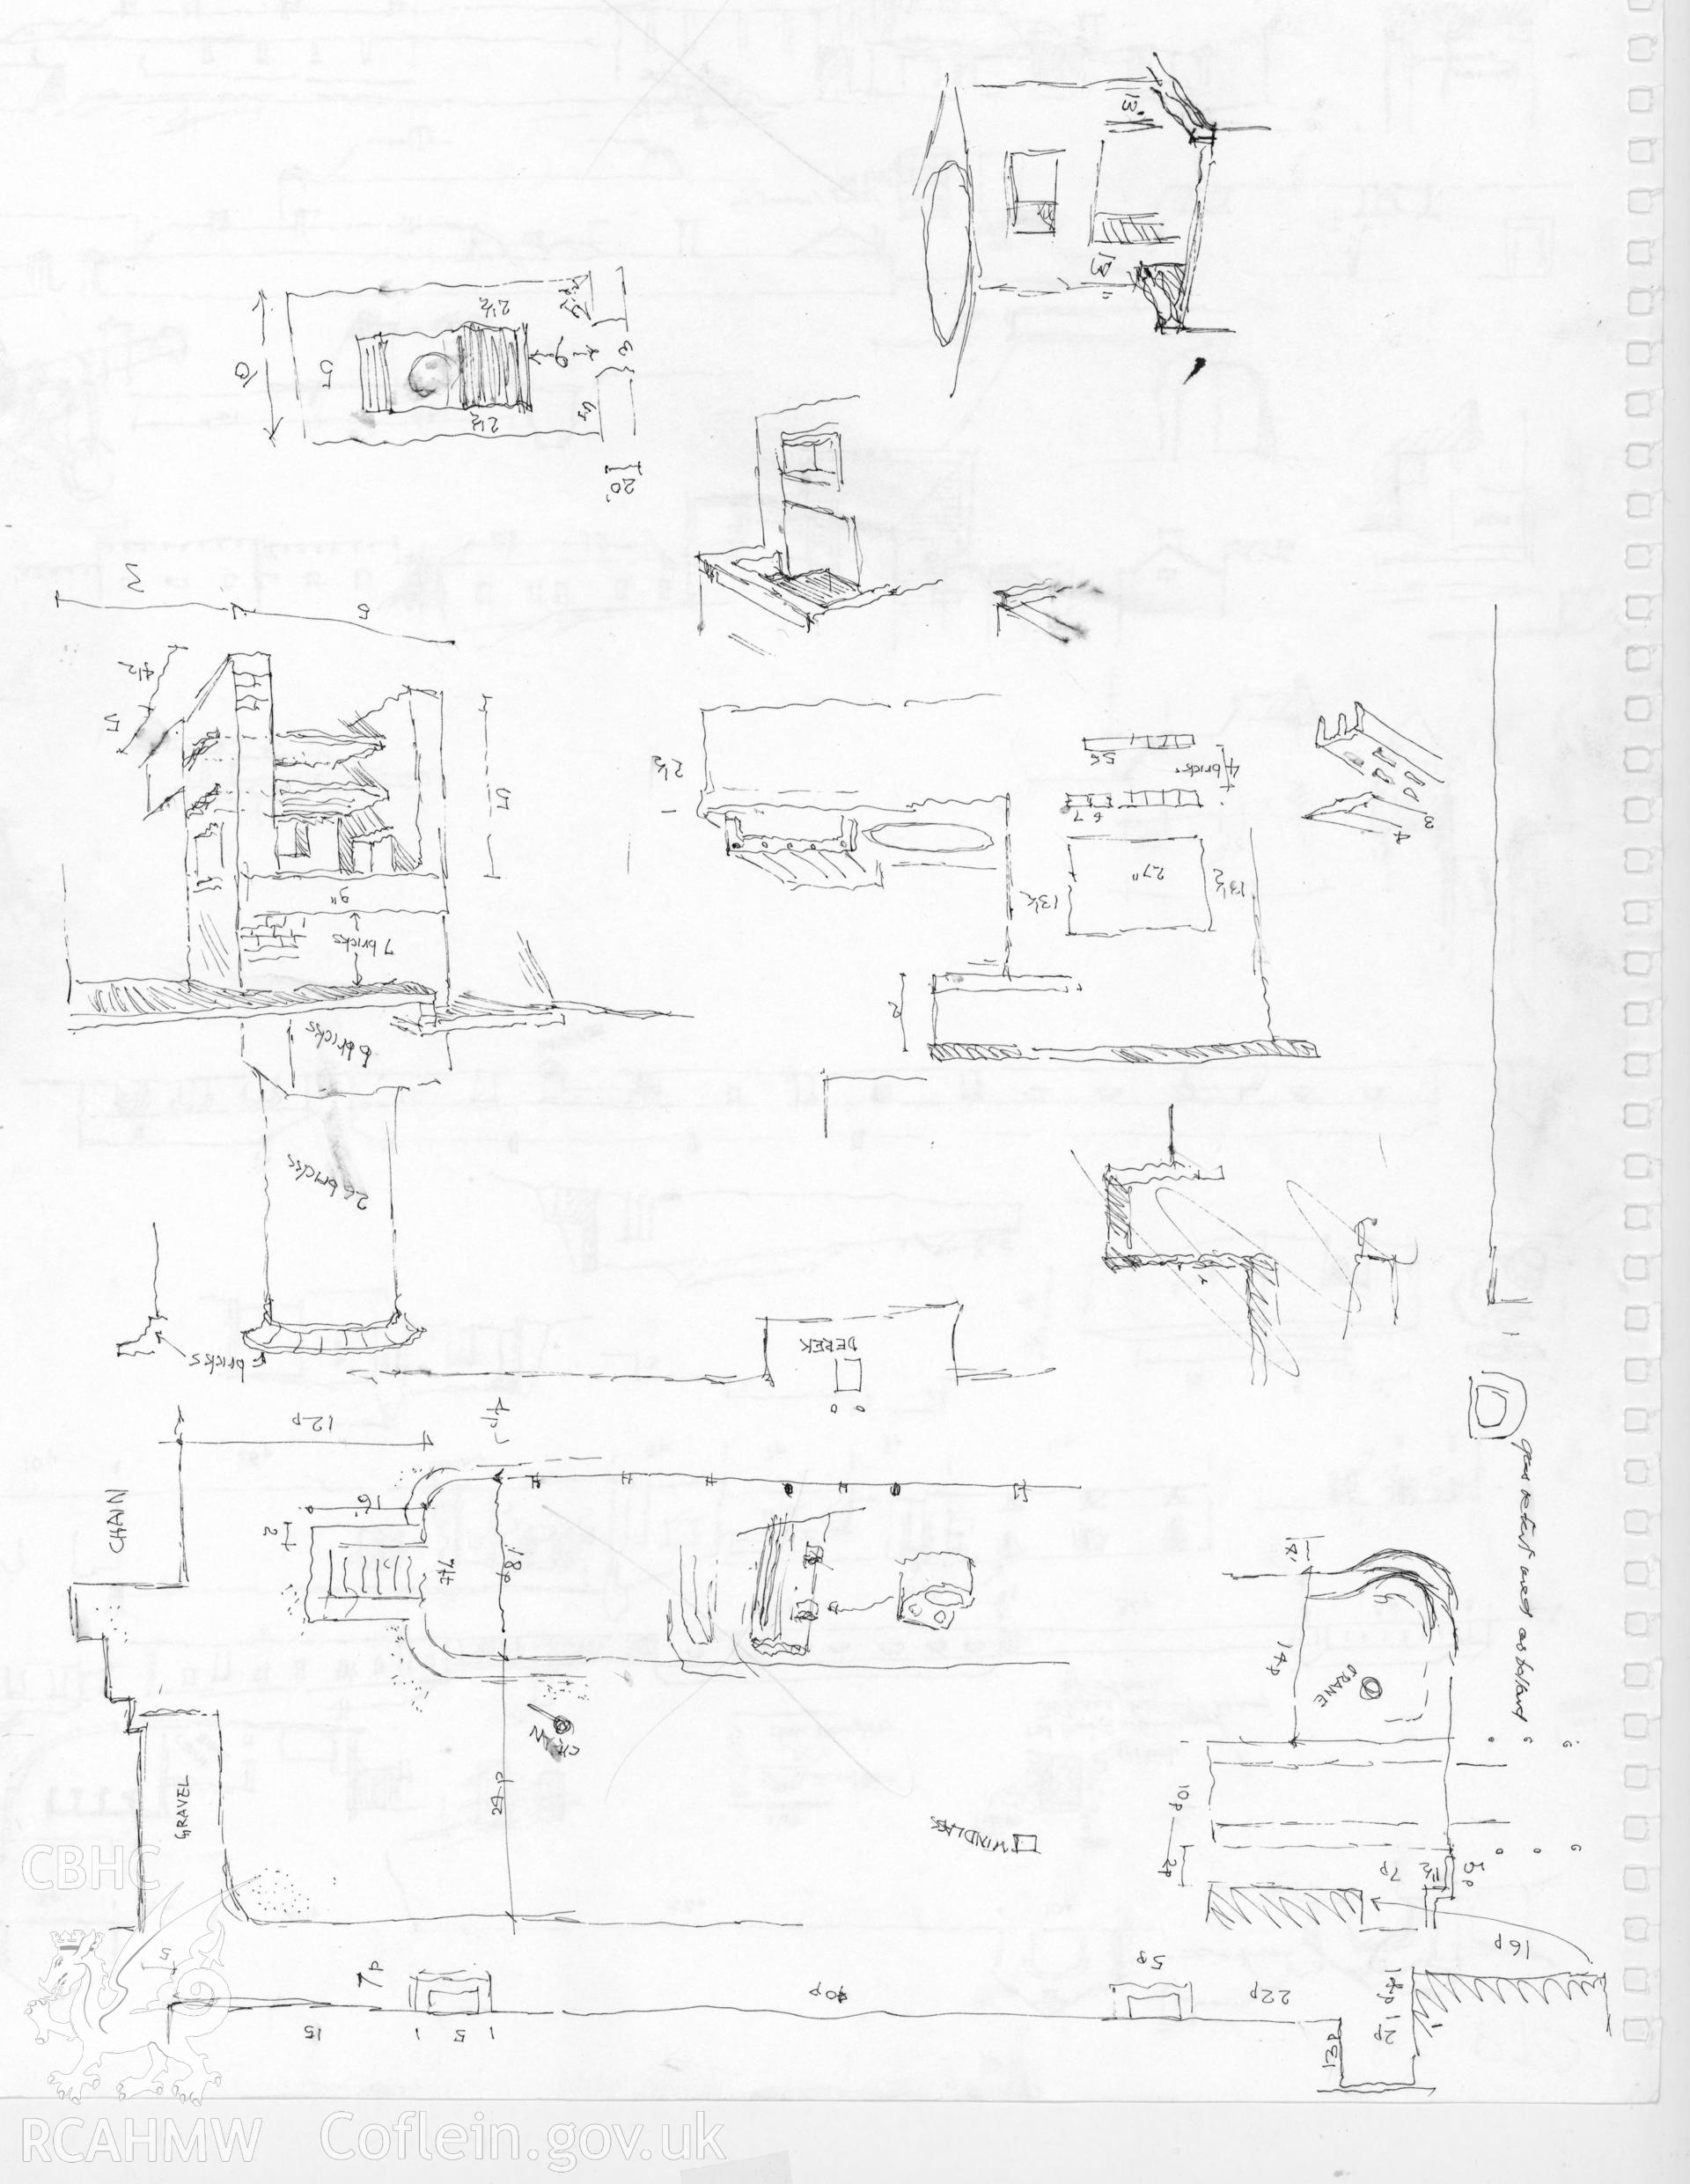 Fort Belan: (ink) composite, preliminary sketch drawing.